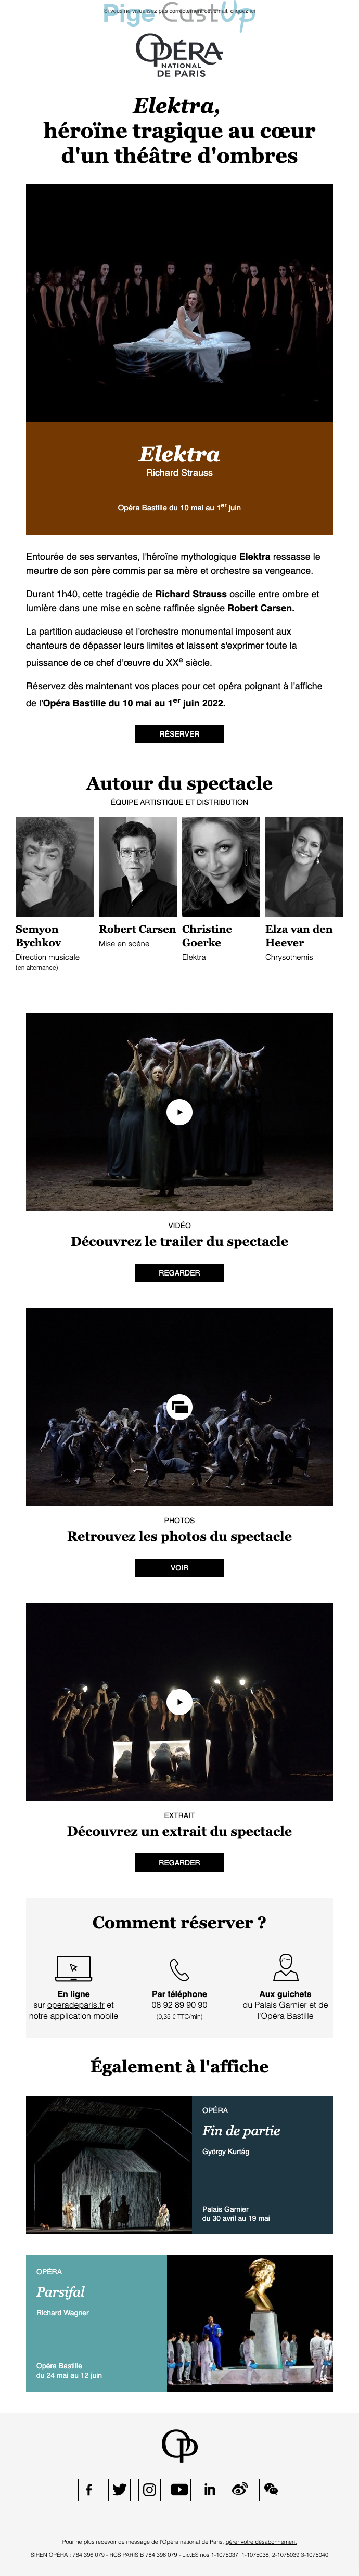 Exemple de Type de media  e-mailing - Opéra de Paris - Marketing relationnel - Newsletter